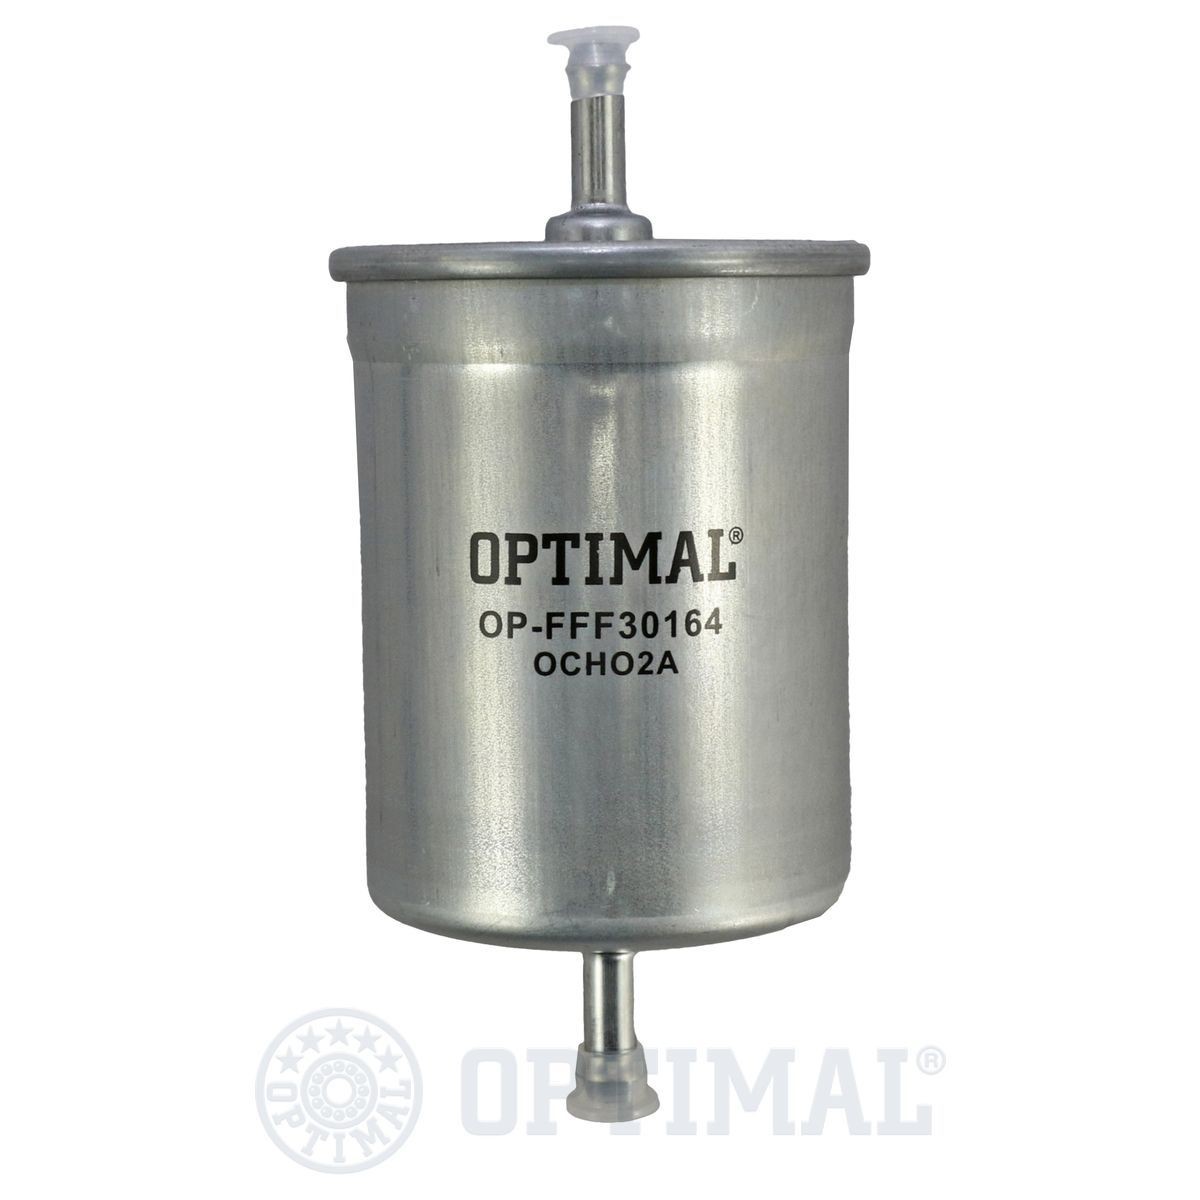 OPTIMAL OP-FFF30164 Fuel filter 12682313